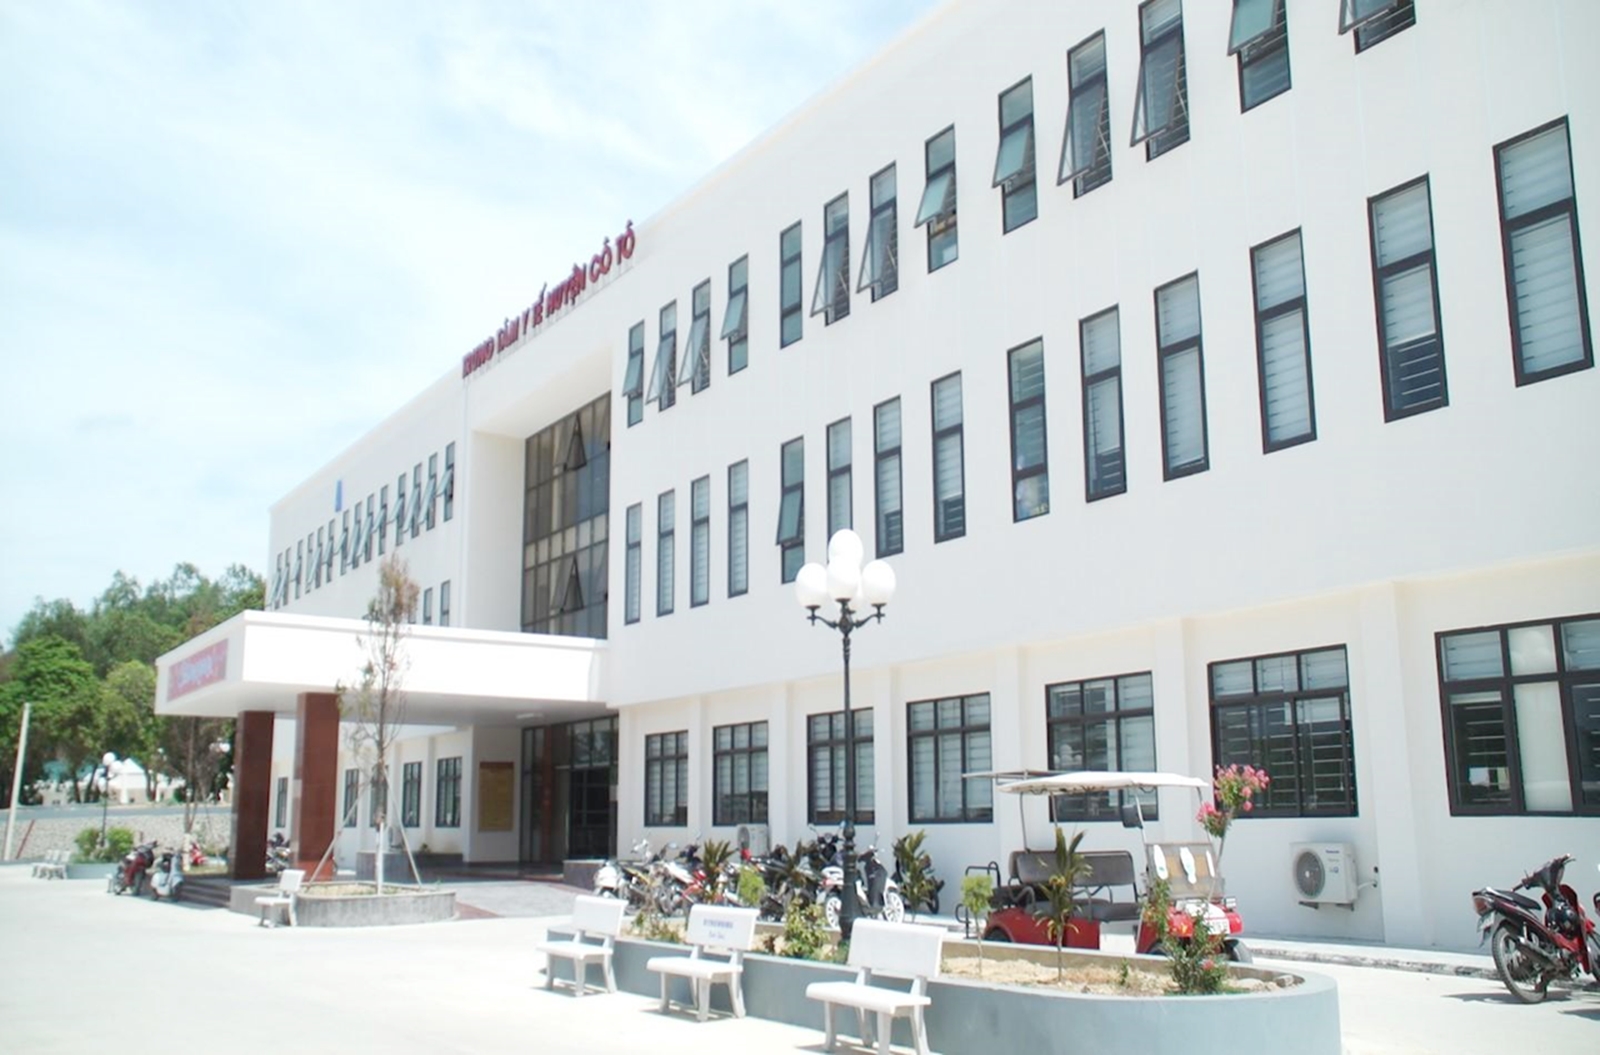  TTYT huyện Cô Tô đưa vào hoạt động tòa nhà 3 tầng khang trang từ cuối năm 2019.